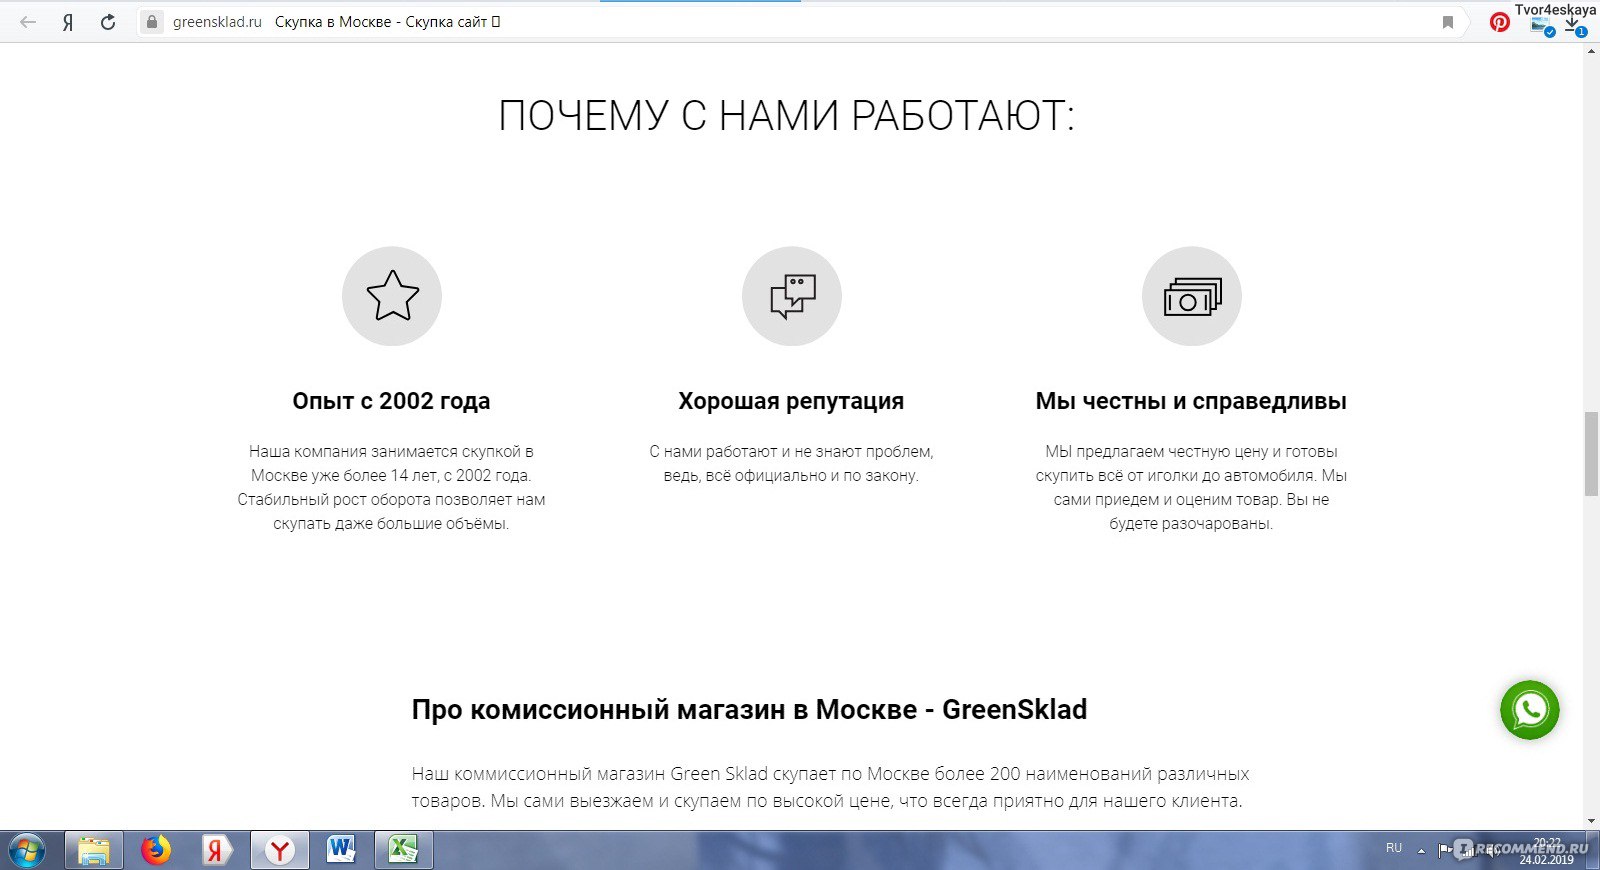 Сайт Greensklad.ru - скупка в Москве отзывы